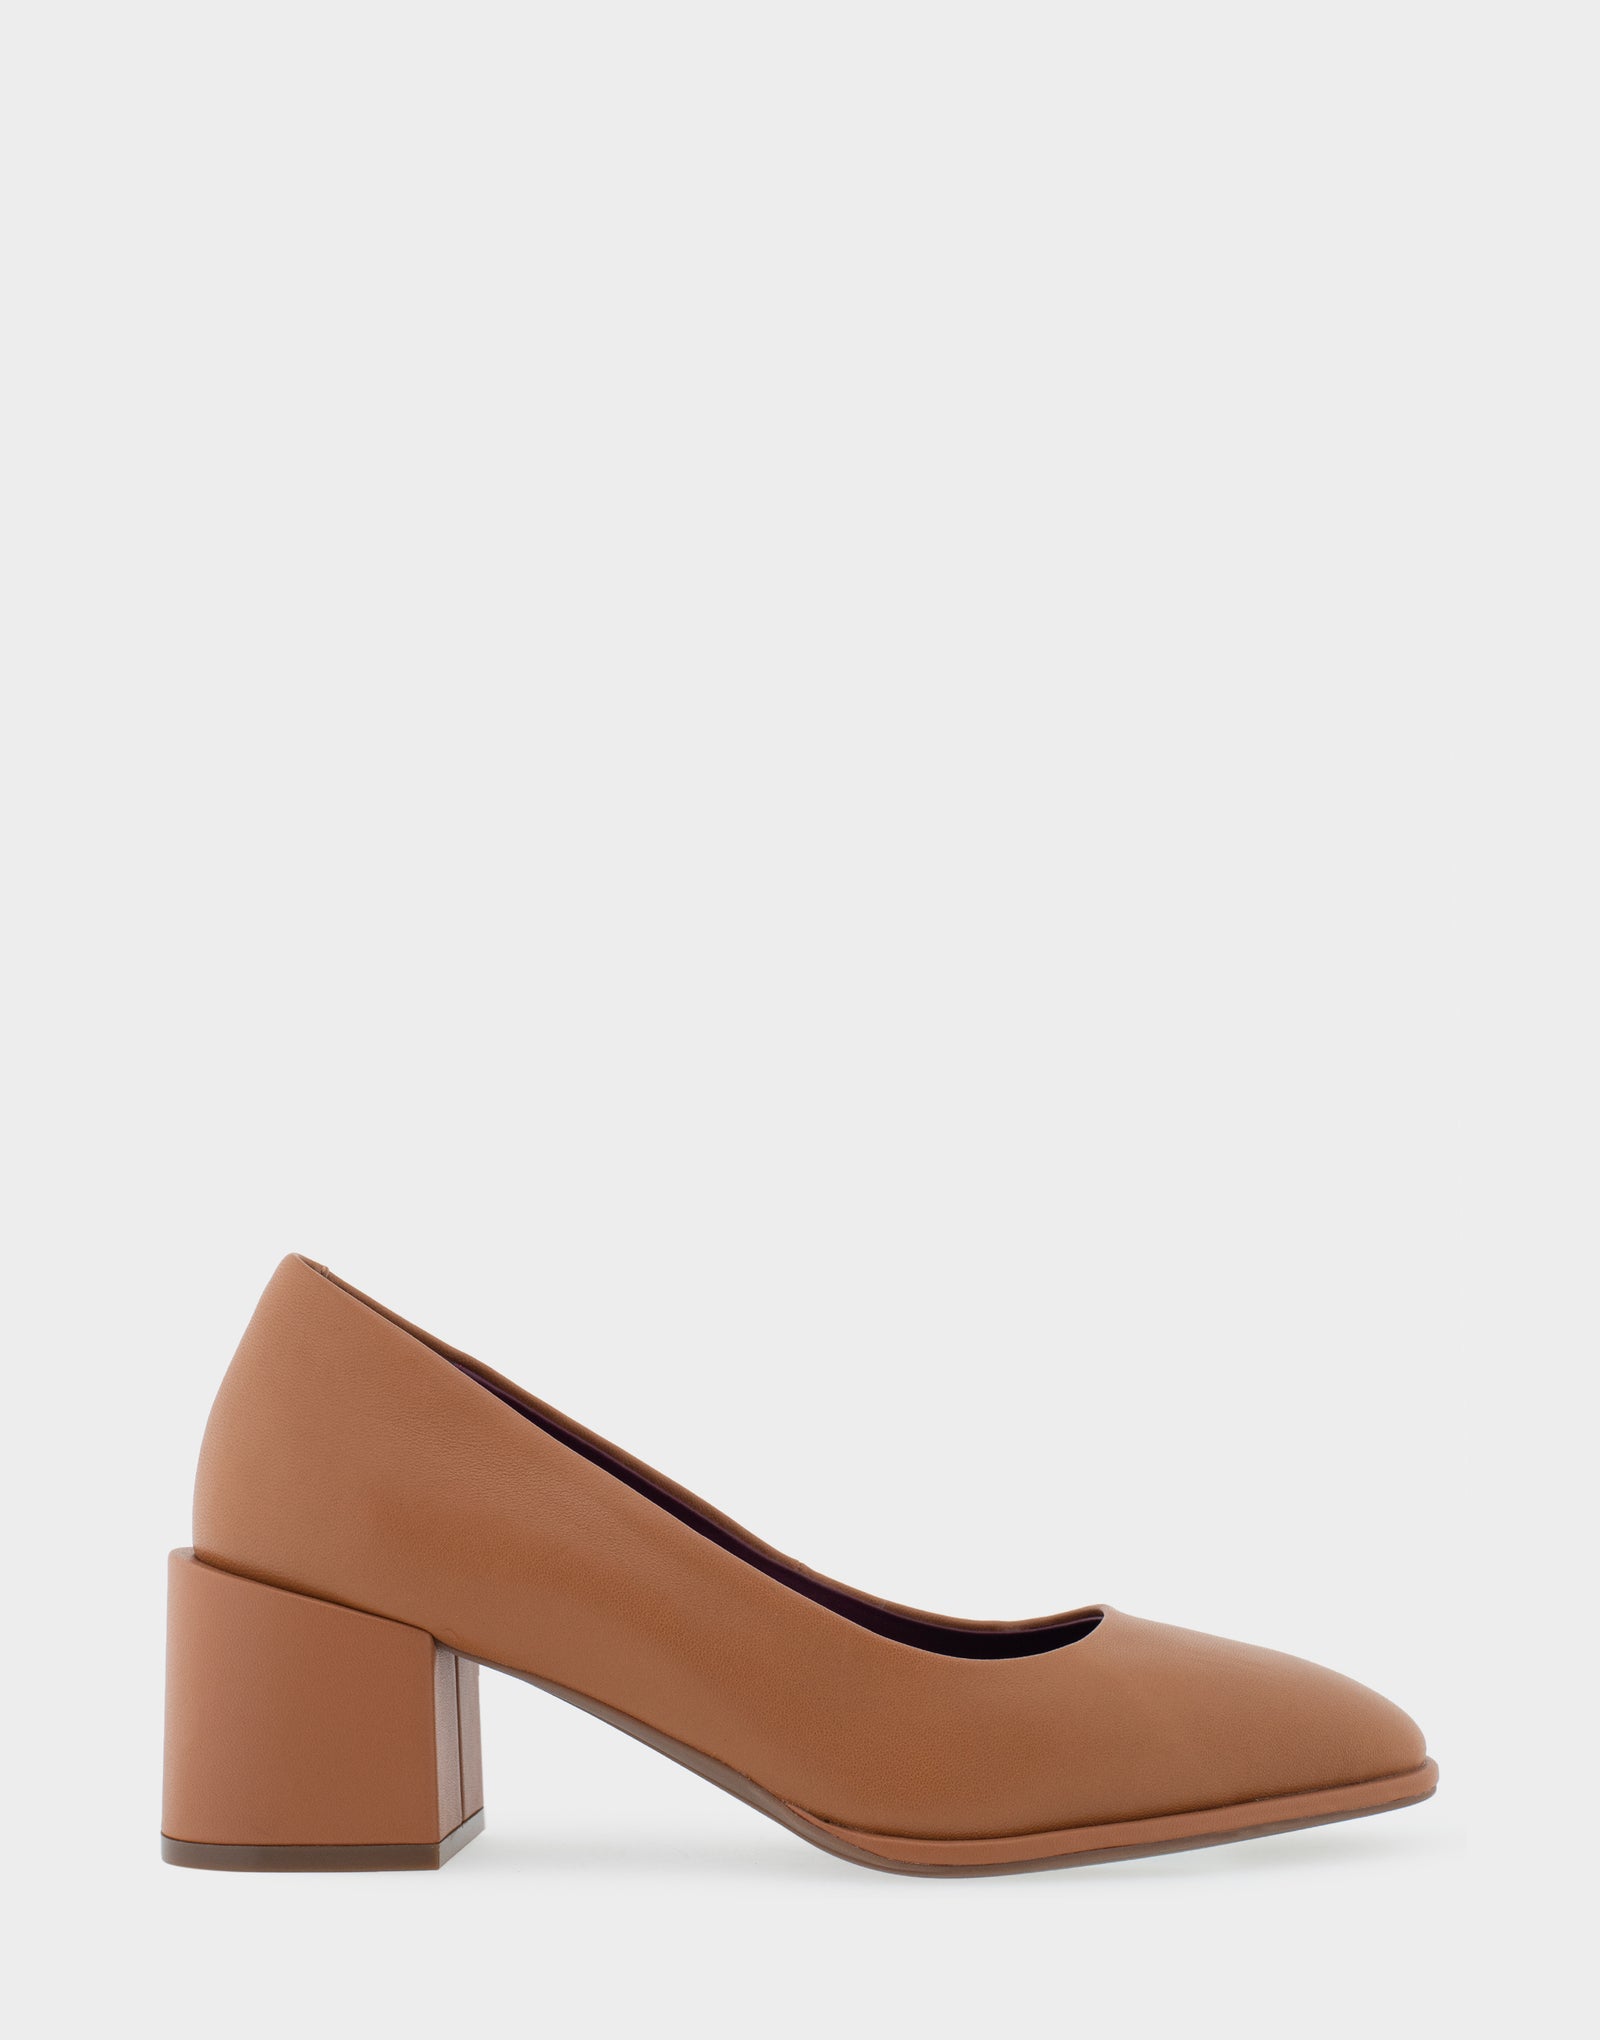 Geox Seyla Leather Block Heel Pump (Women) | Nordstrom | Heels, Block heels  pumps, Leather block heels